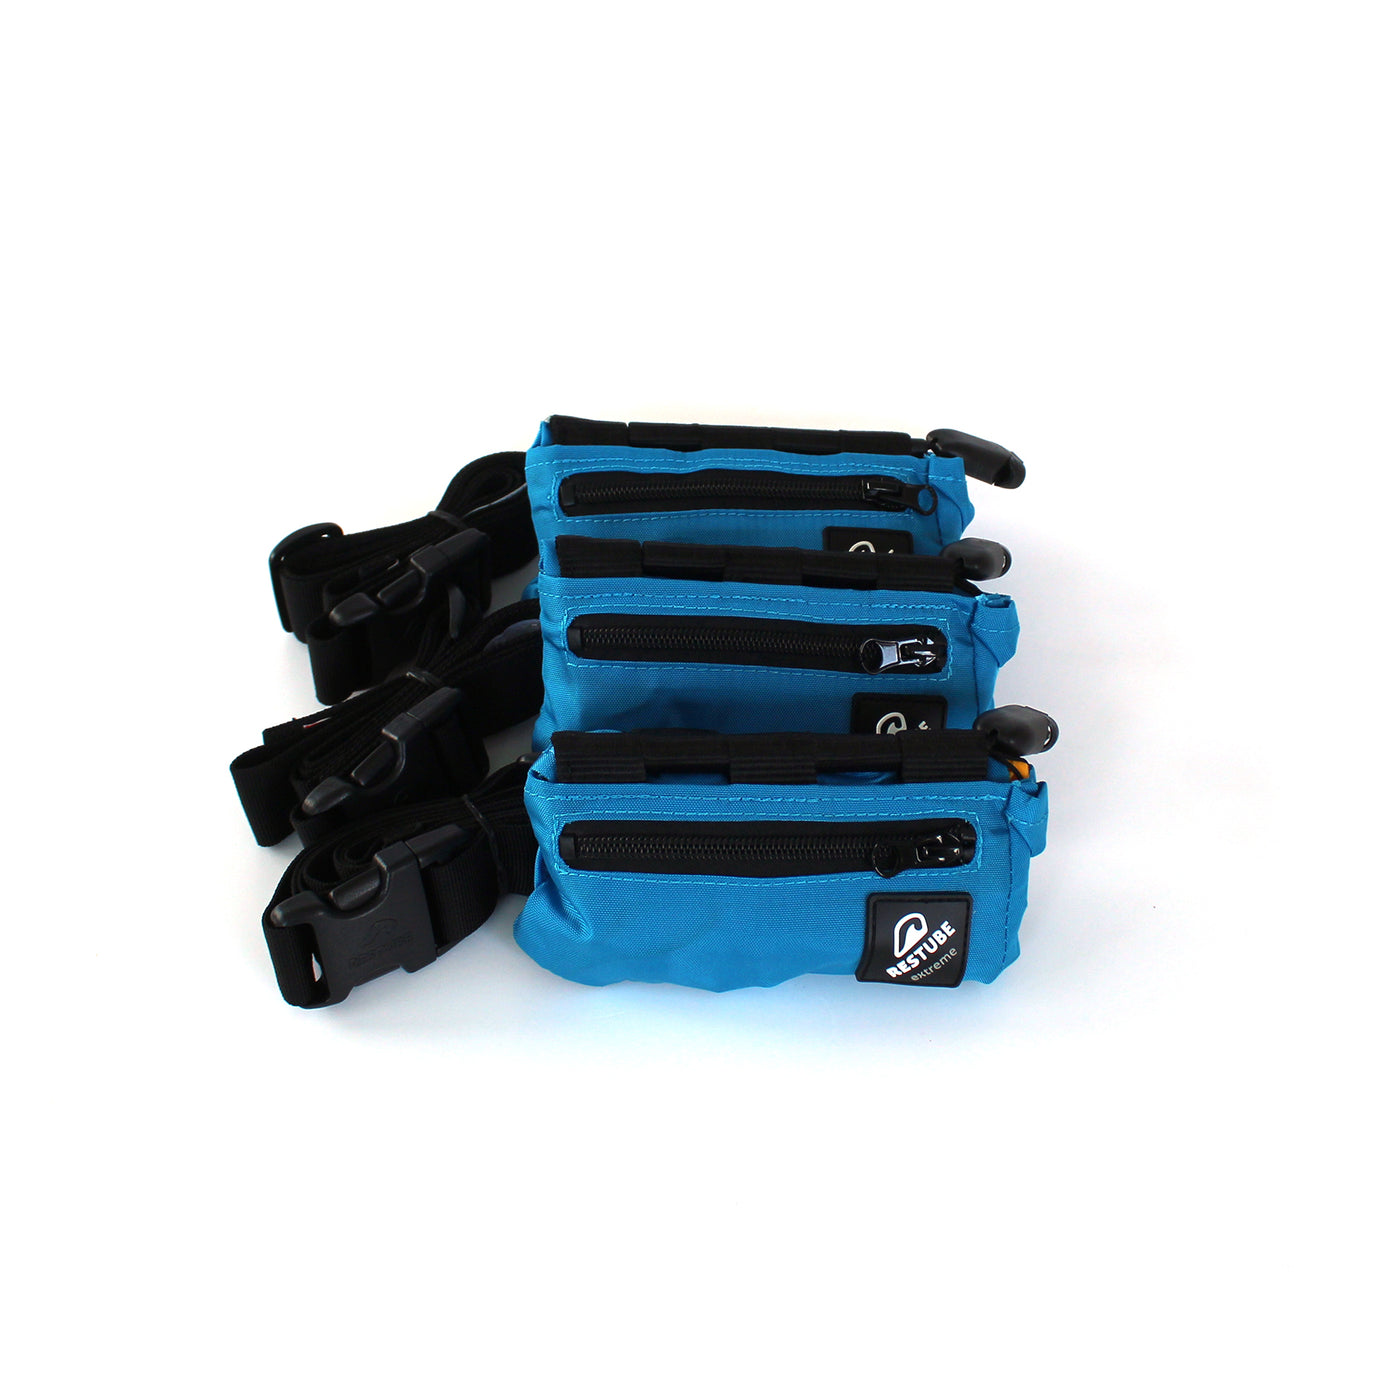 Drei Restube extreme in blauer Tasche verpackt, mit schwarzem Gürtel